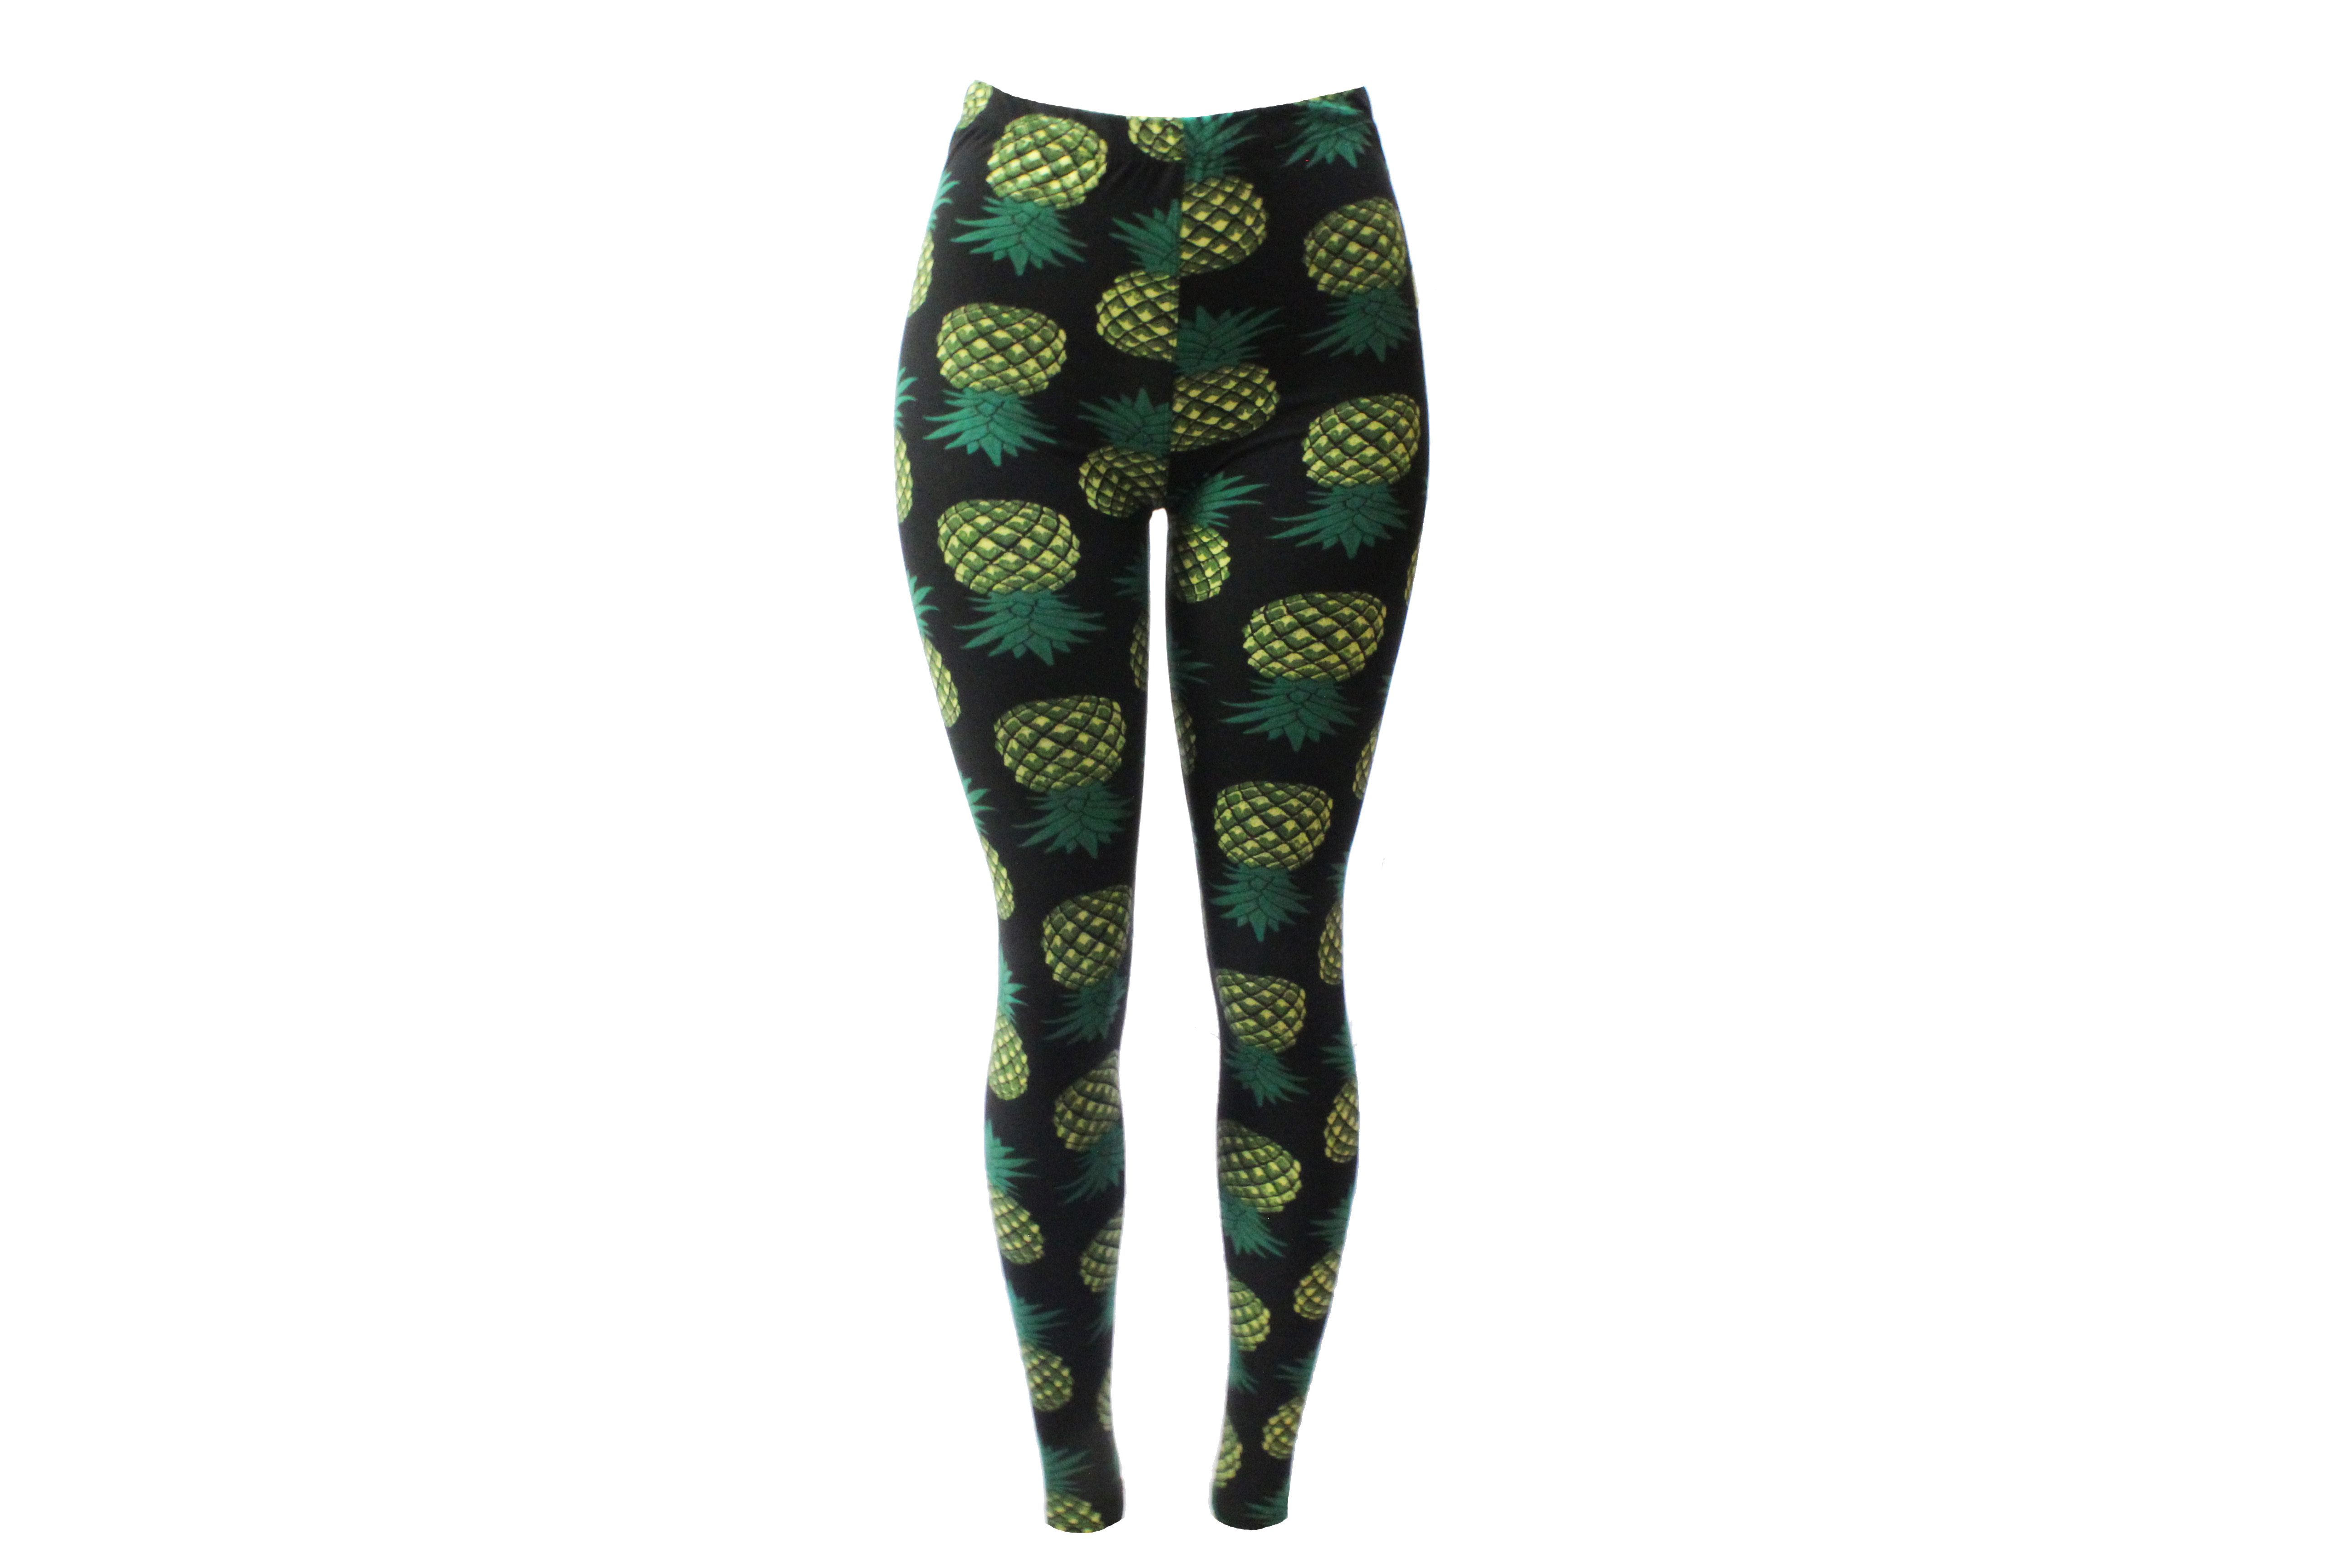 https://freshairclothing.com/wp-content/uploads/2019/12/pineapple-leggings.jpg